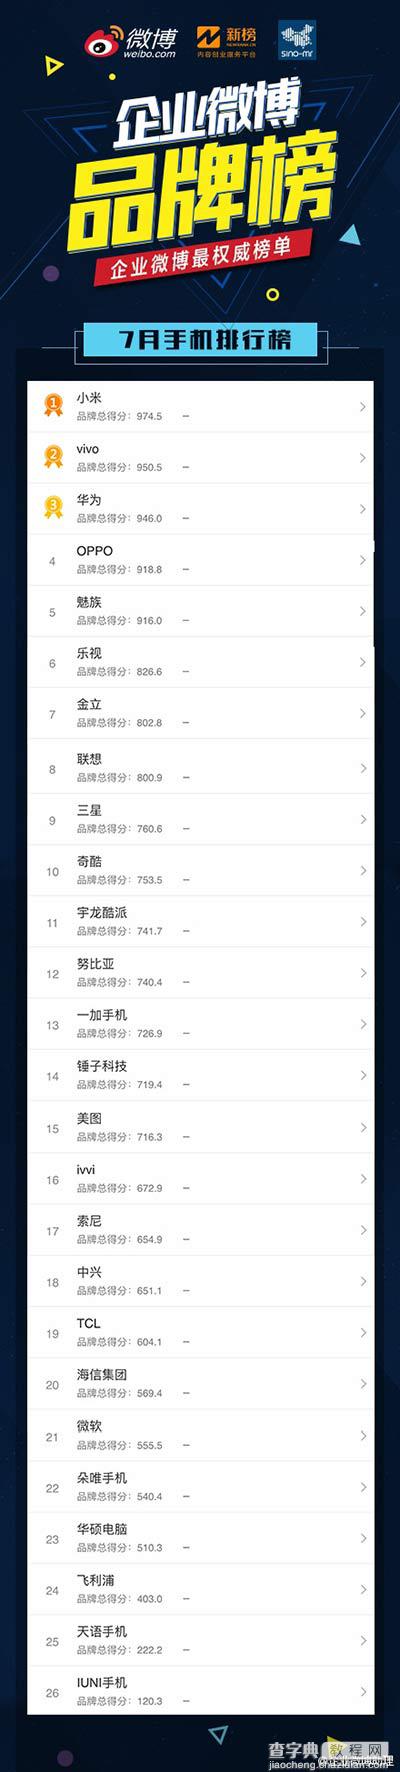 2016.7月企业手机微博品牌榜发布:小米第一2